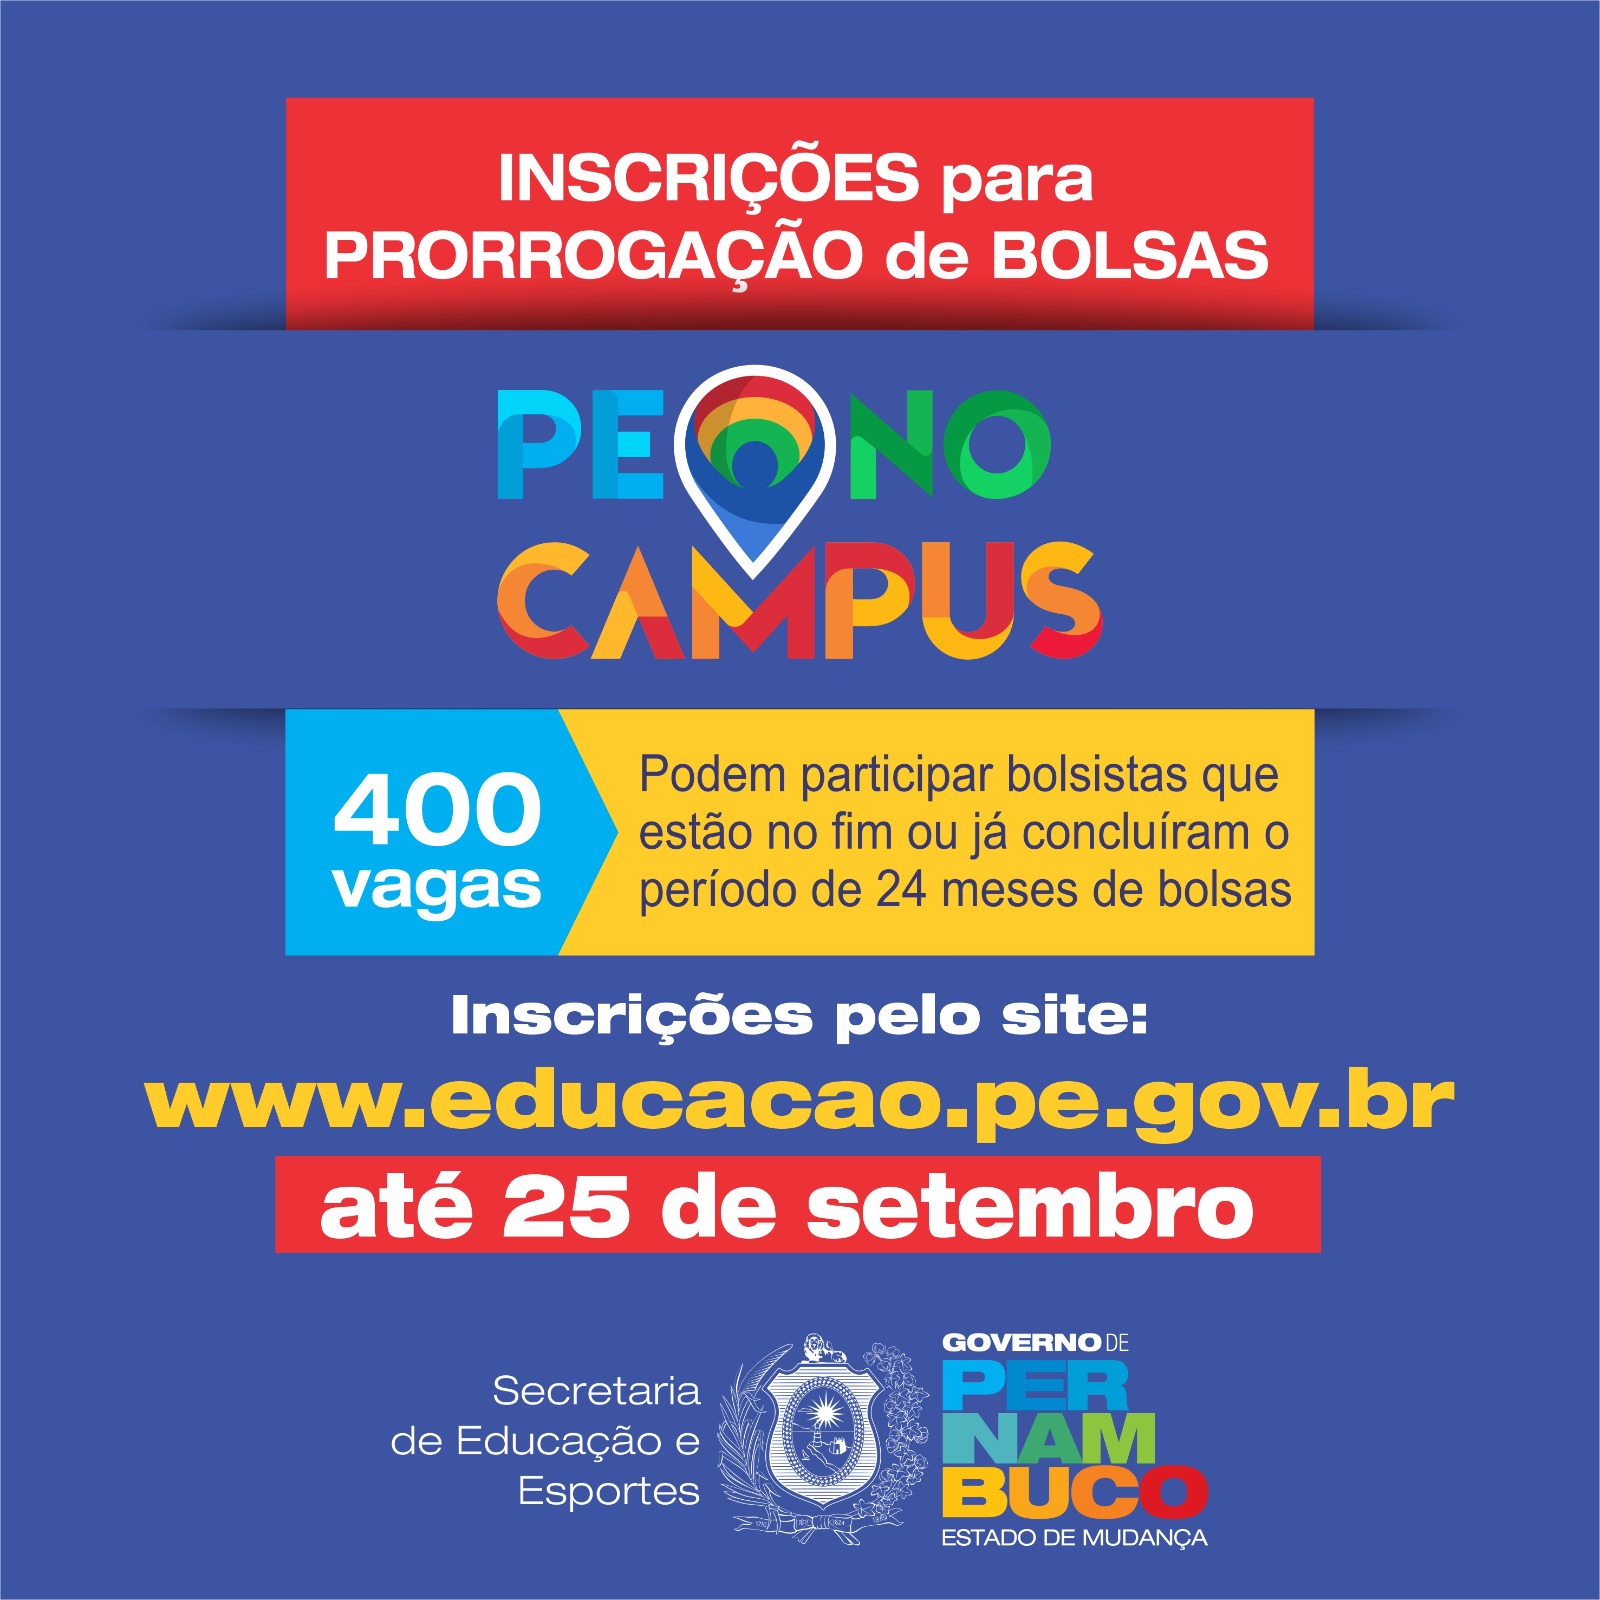 Secretaria de Educação e Esportes de Pernambuco abre inscrições para prorrogação de  bolsas do Programa PE no Campus